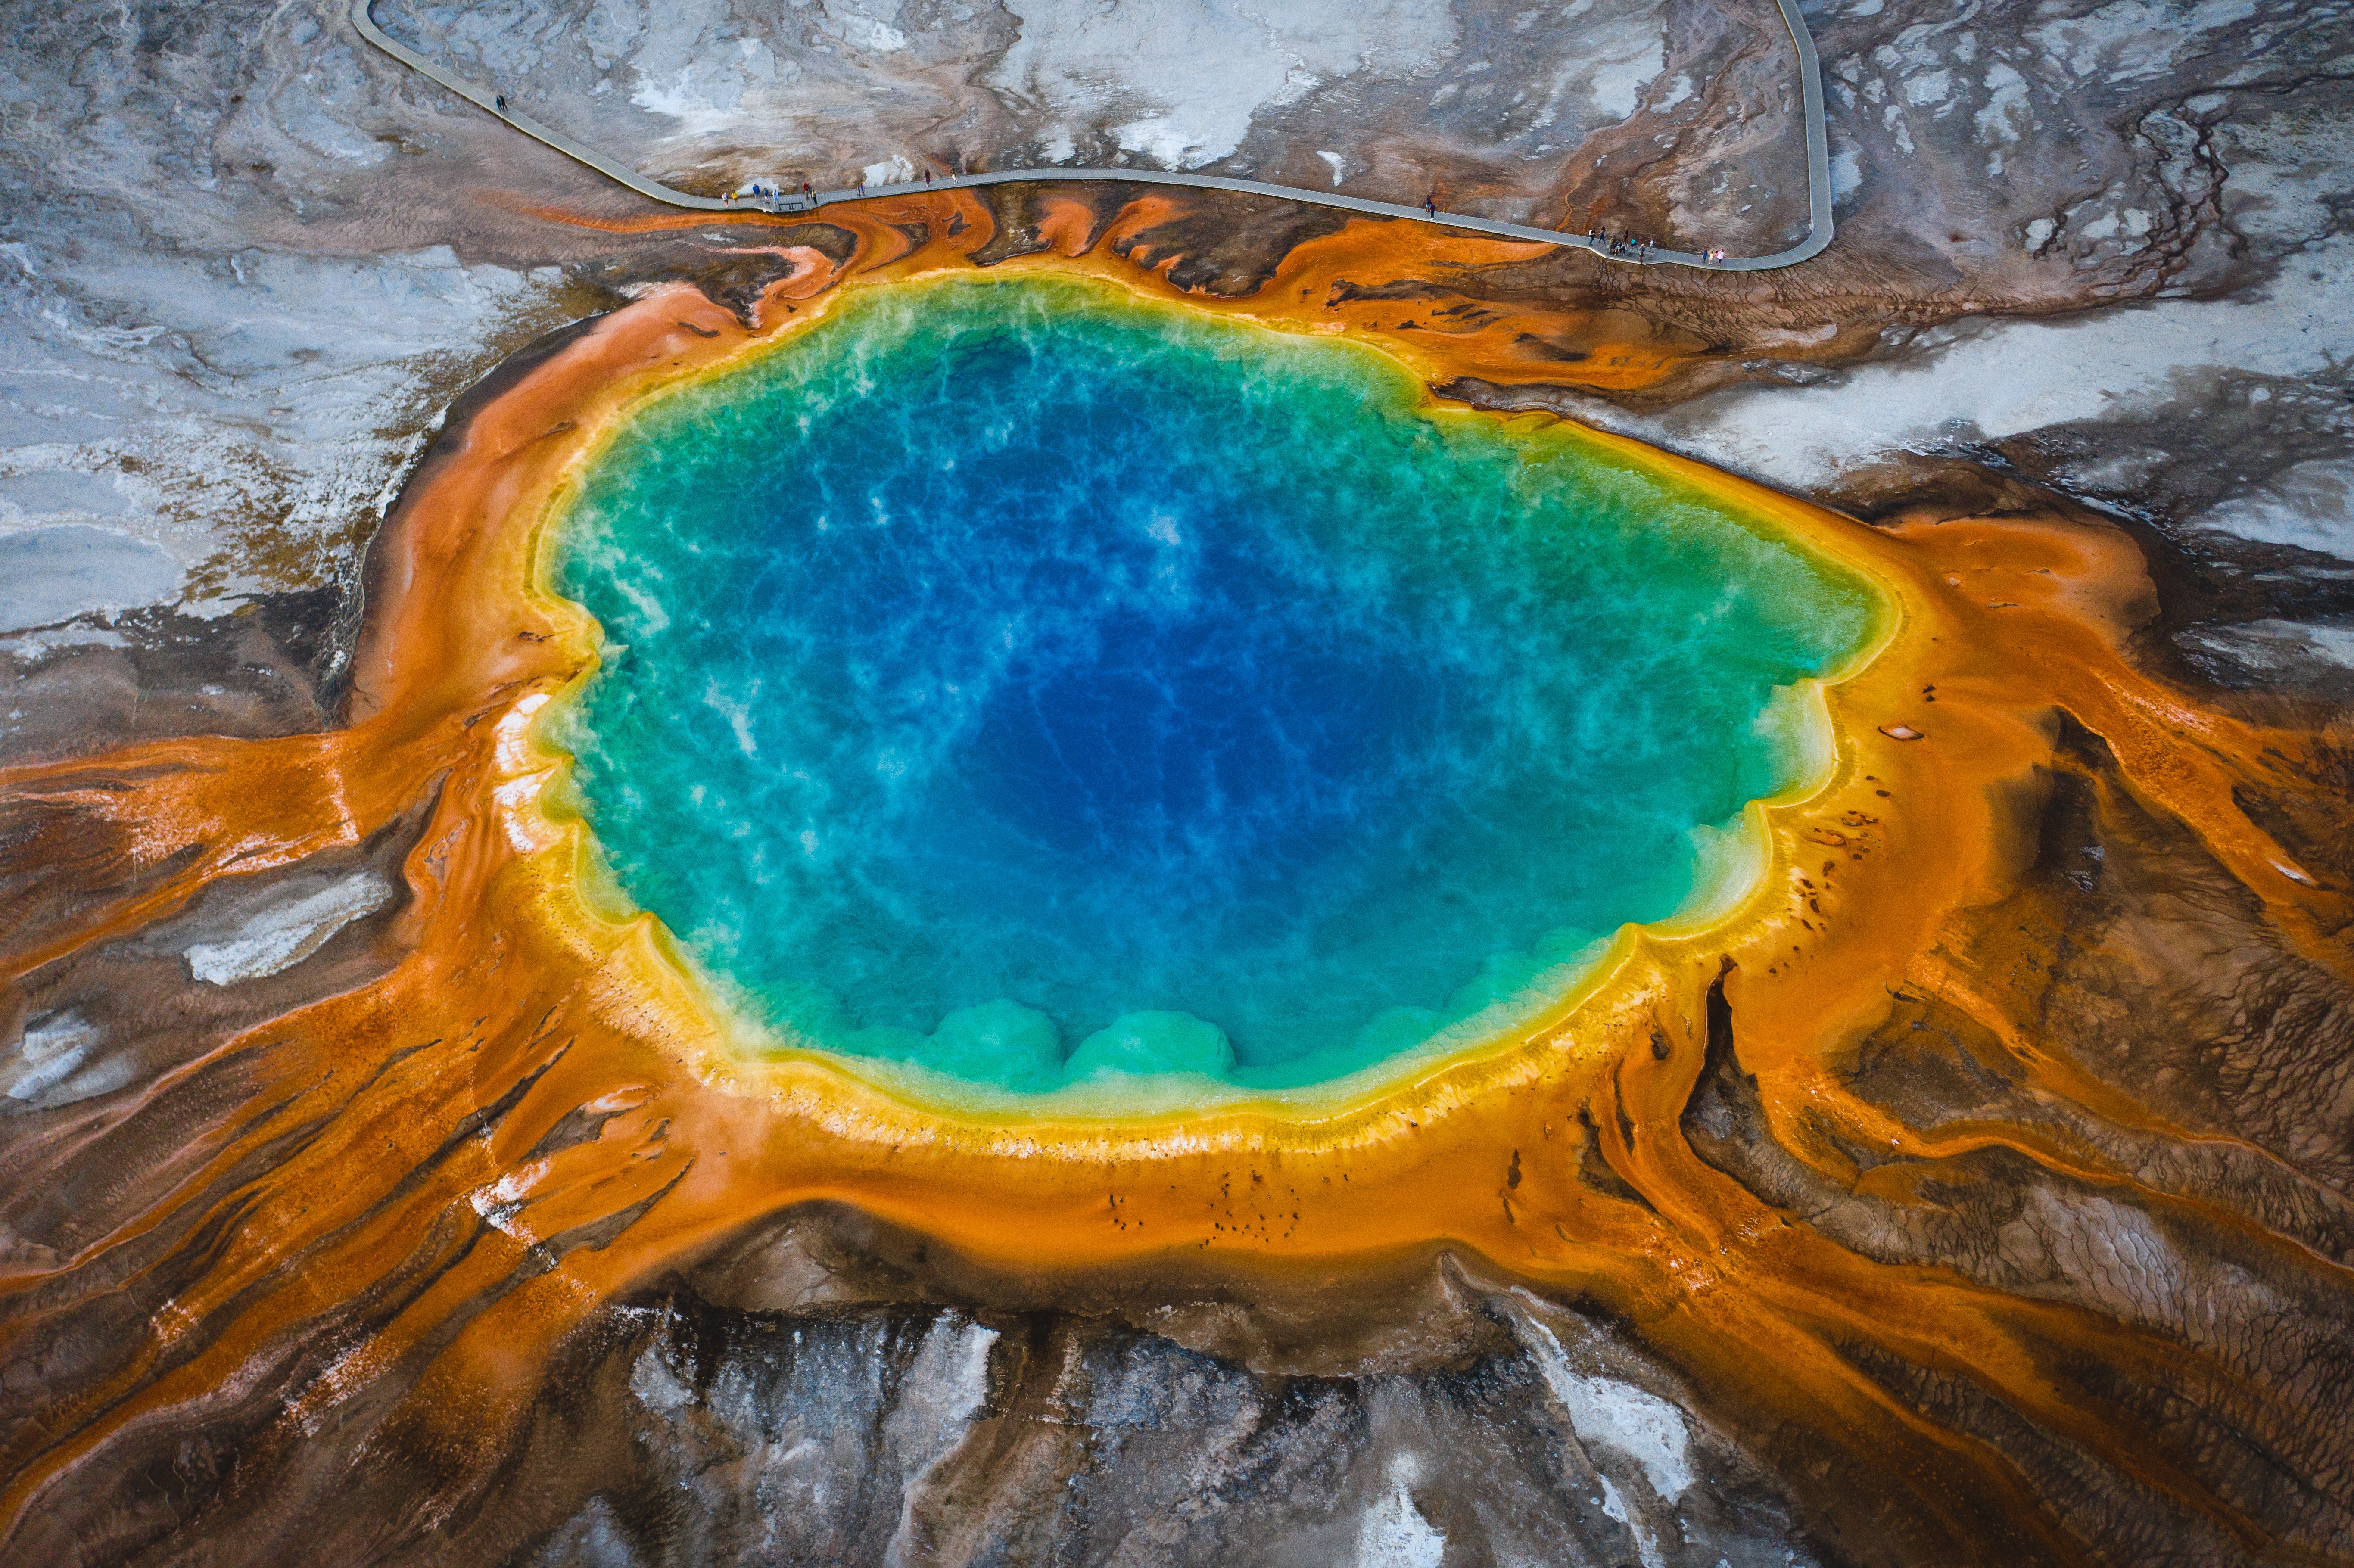 Gran fuente prismática. La fuente de agua termal en el Parque Nacional Yellowstone